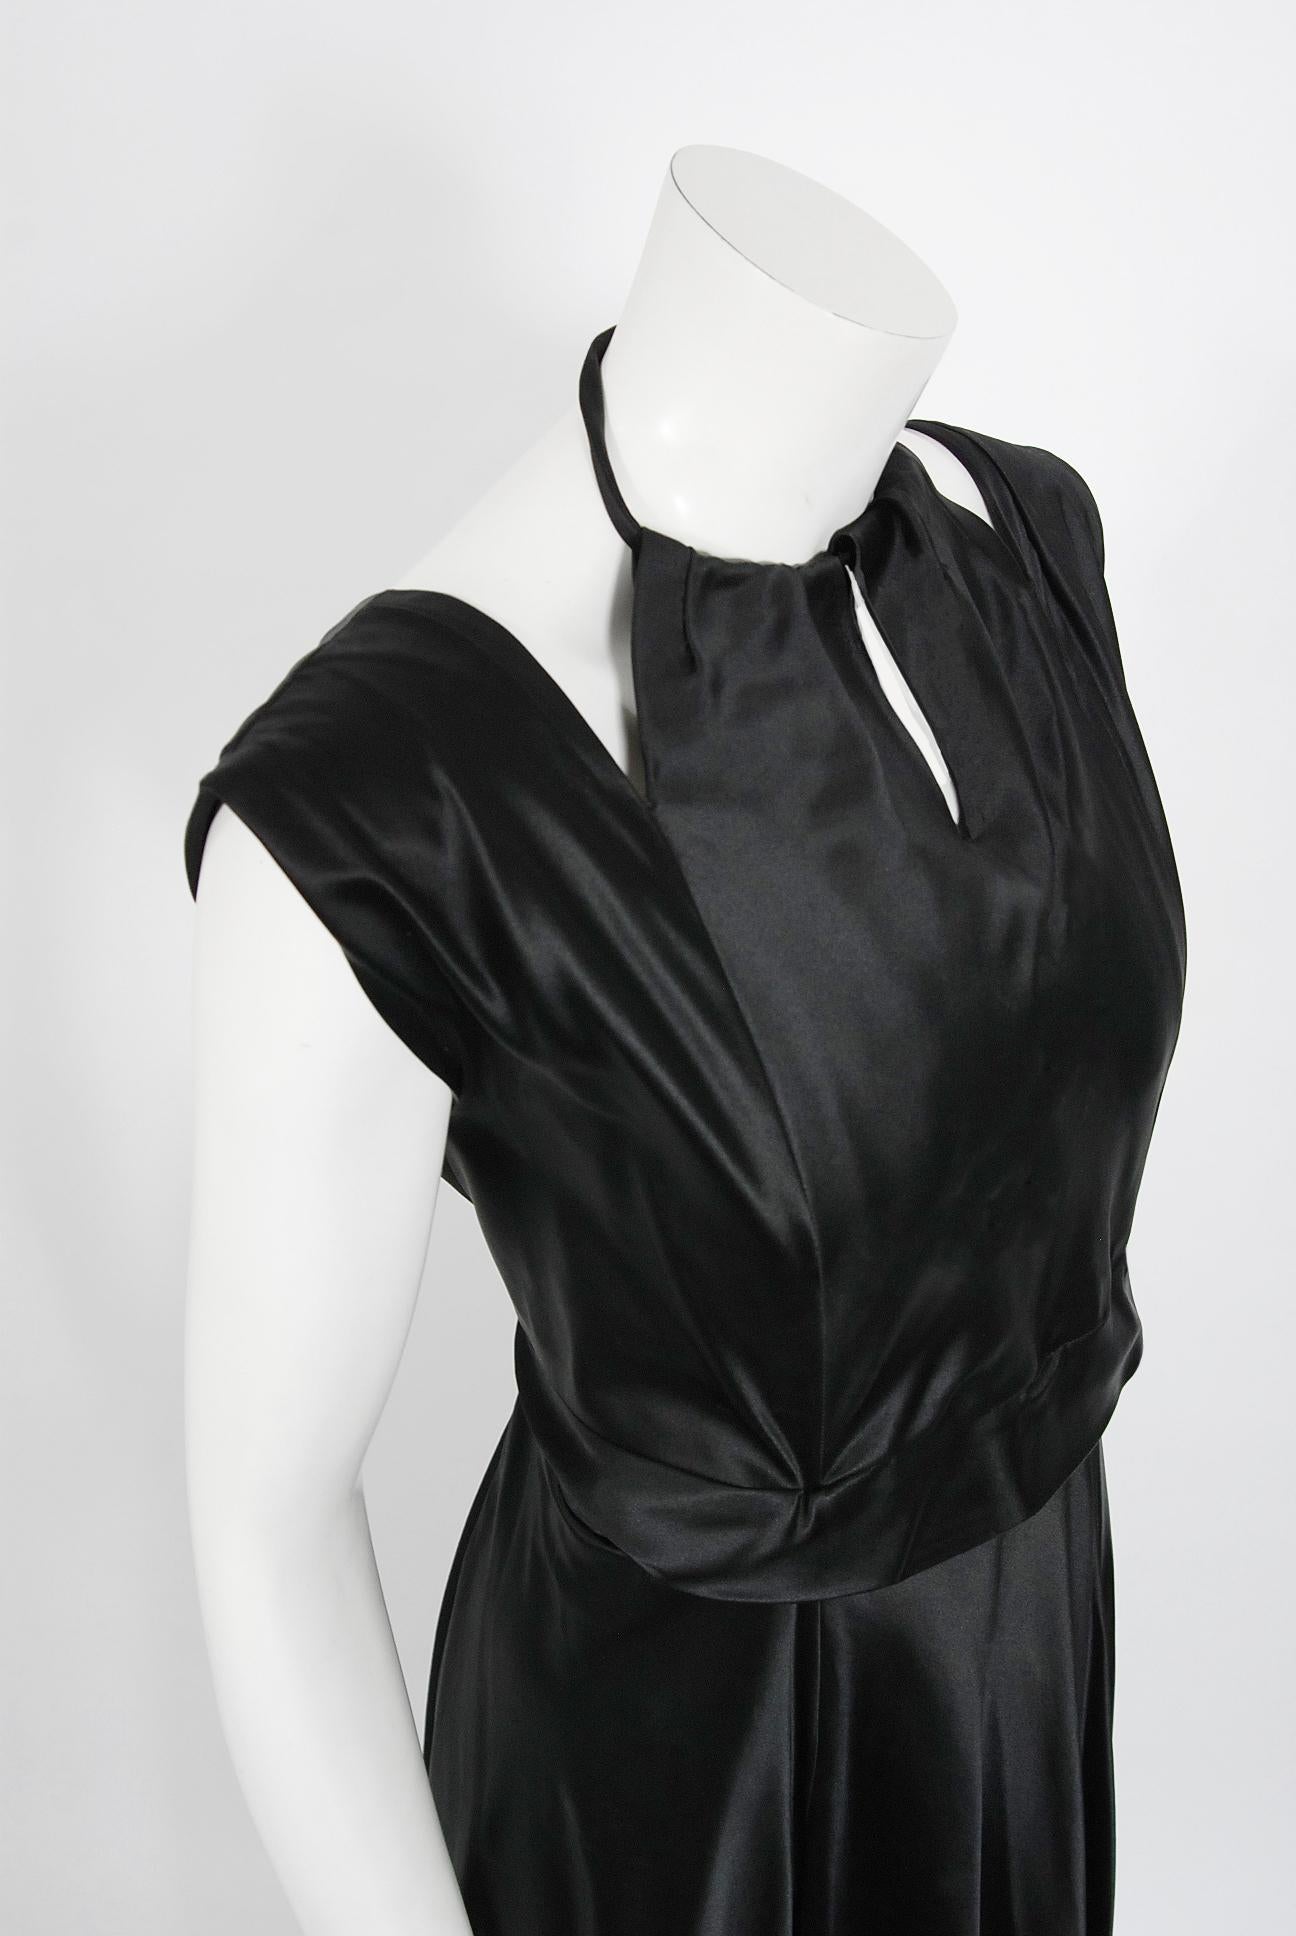 Marcelle Dormoy Französisches Couture Vintage-Kleid mit tiefem Rückenausschnitt aus schwarzer Seide, 1940er Jahre (Schwarz) im Angebot